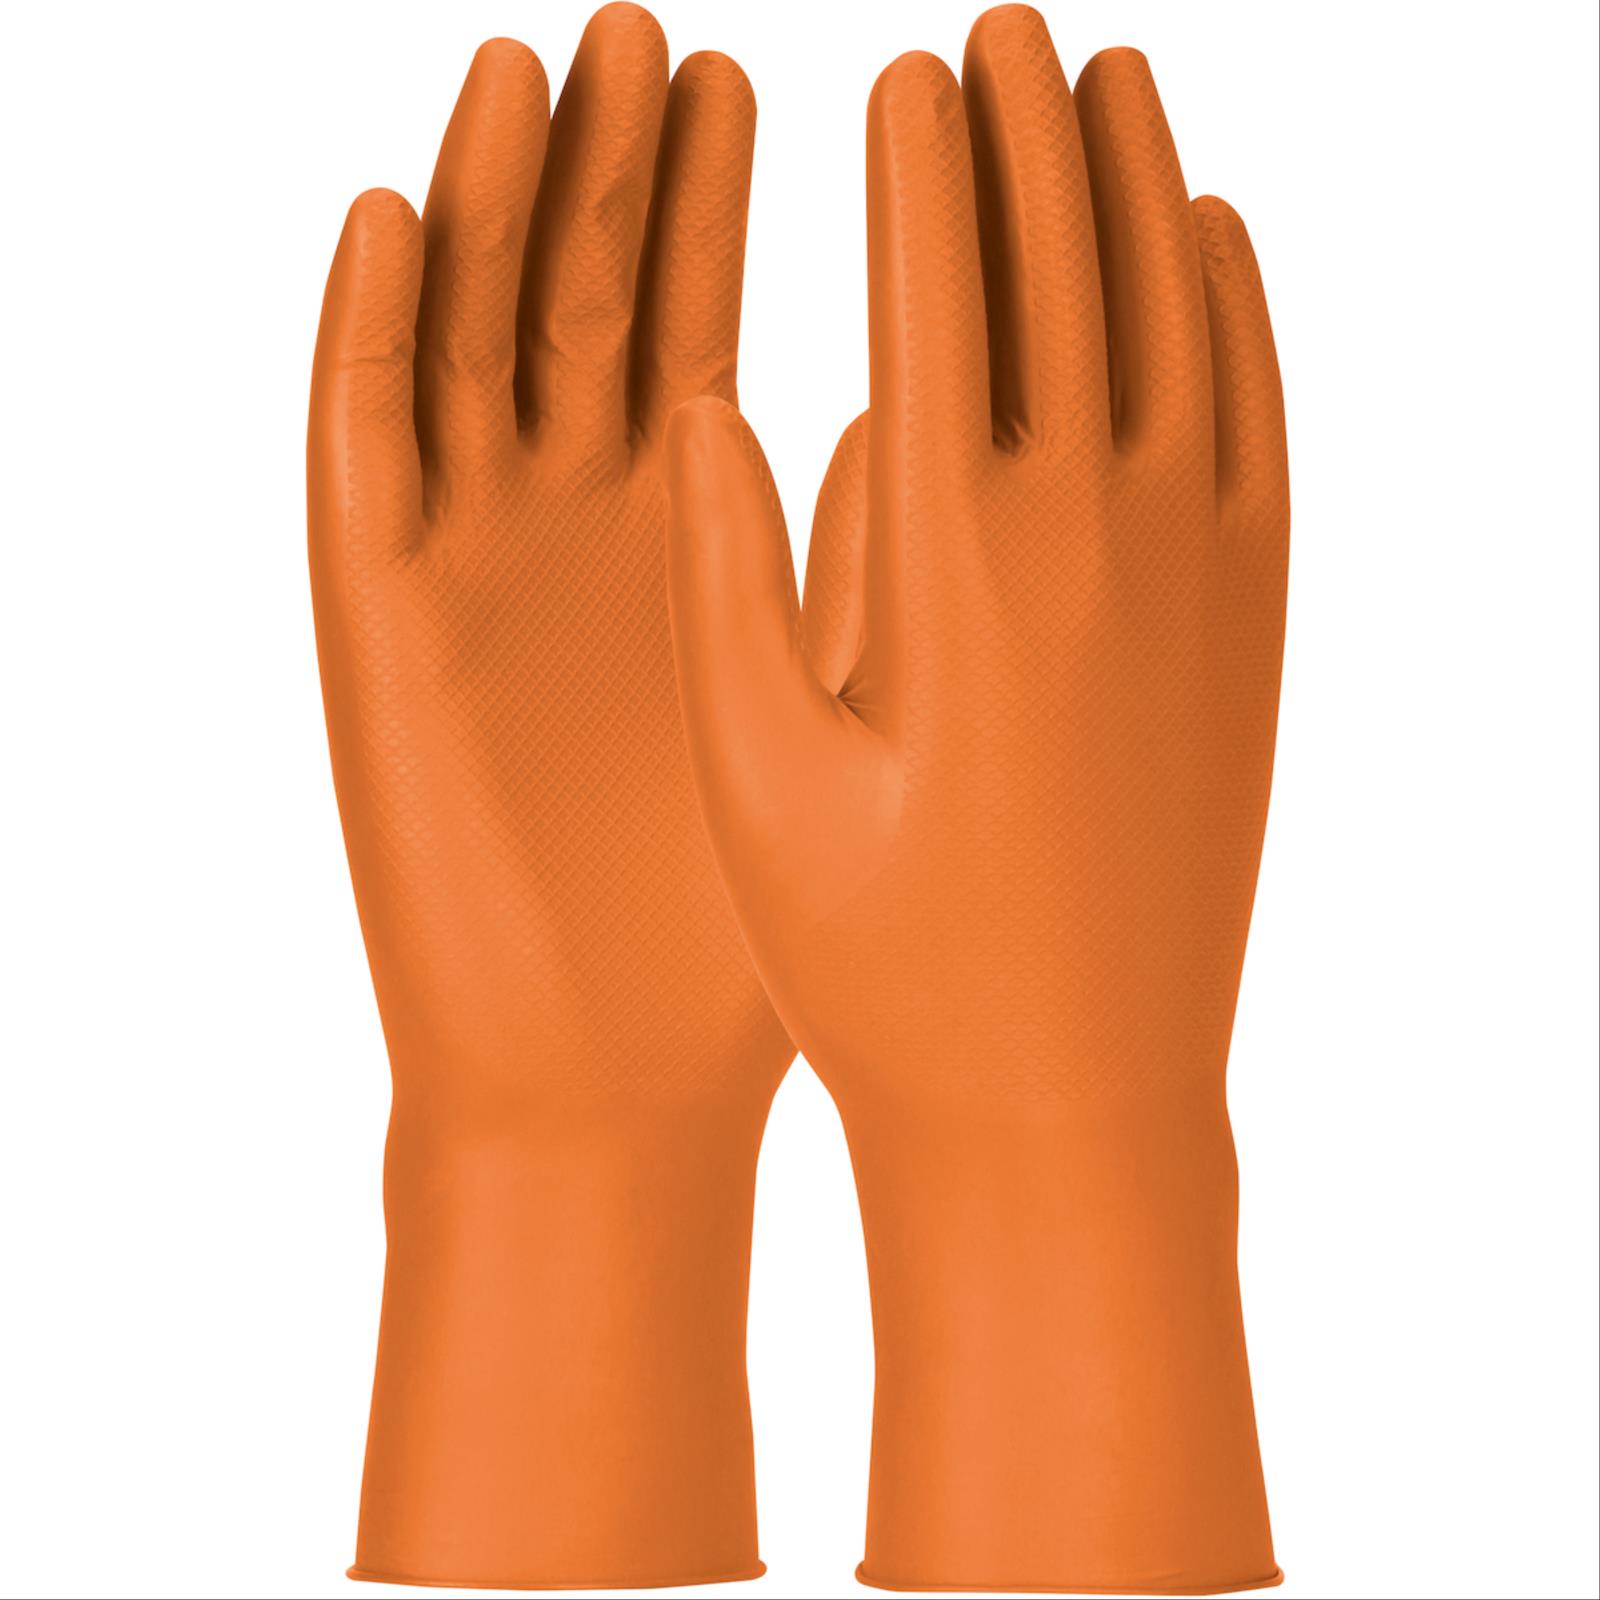 Grippaz™ Engage, Nitrile Gloves